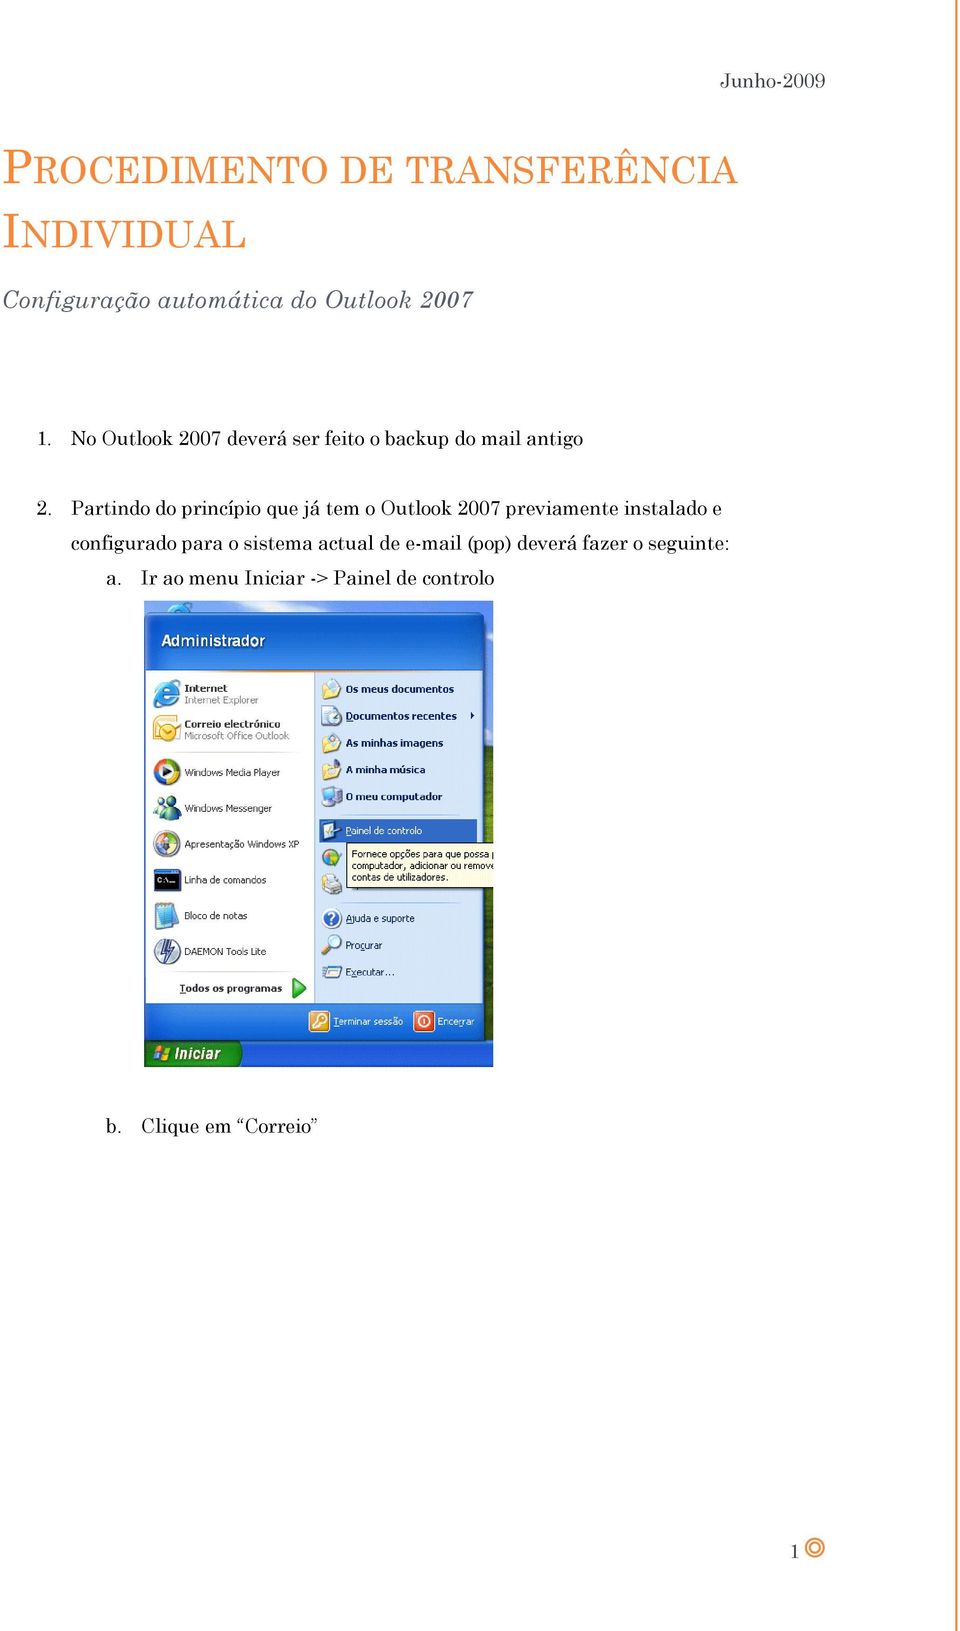 Partindo do princípio que já tem o Outlook 2007 previamente instalado e configurado para